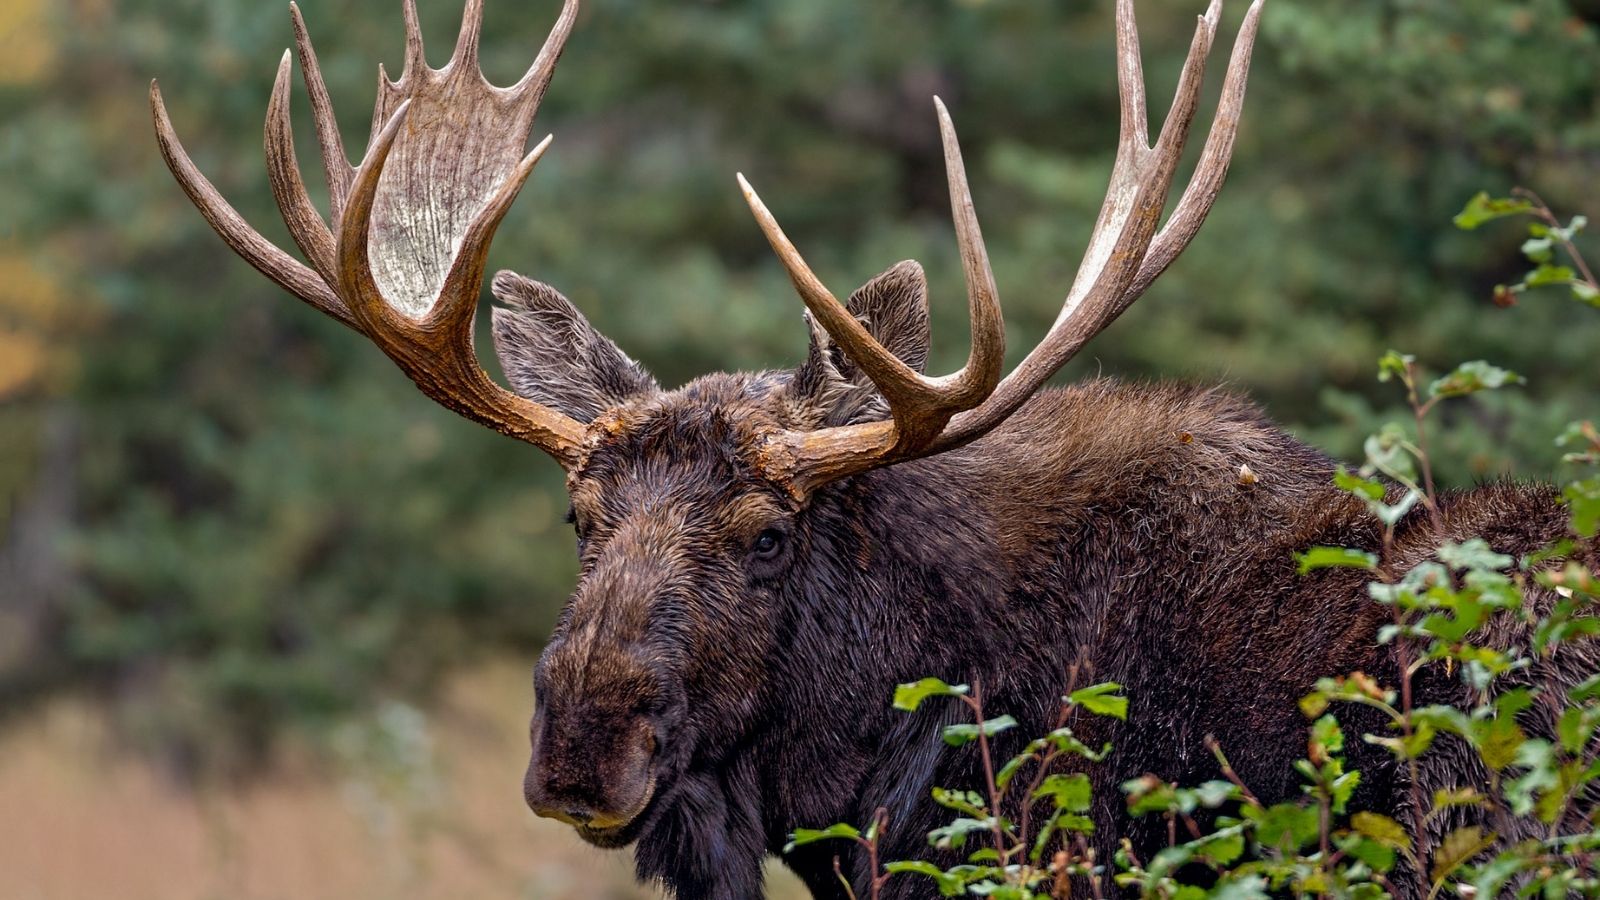 Bull moose standing in vegetation